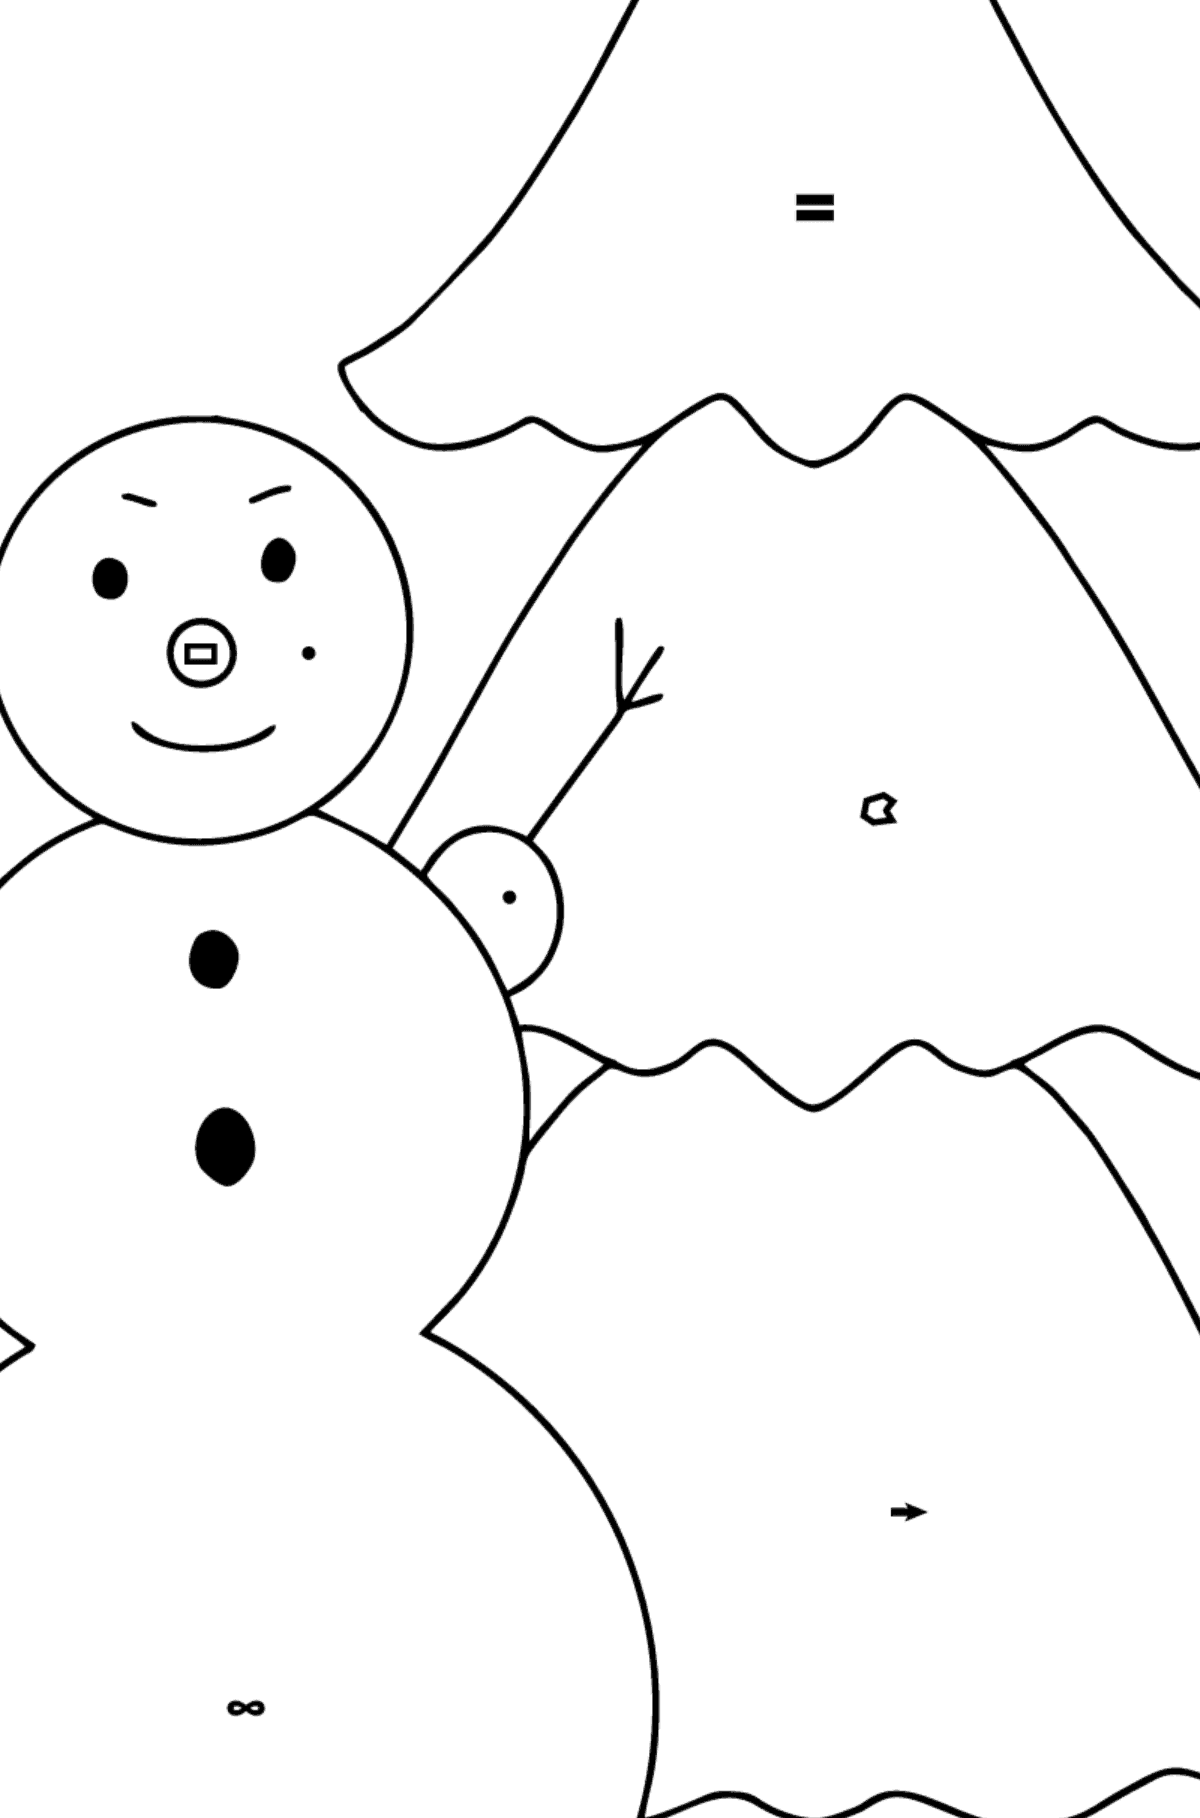 Omalovánka sněhulák a strom - Omalovánka podle Symbolů a Geometrickým Tvarům pro děti